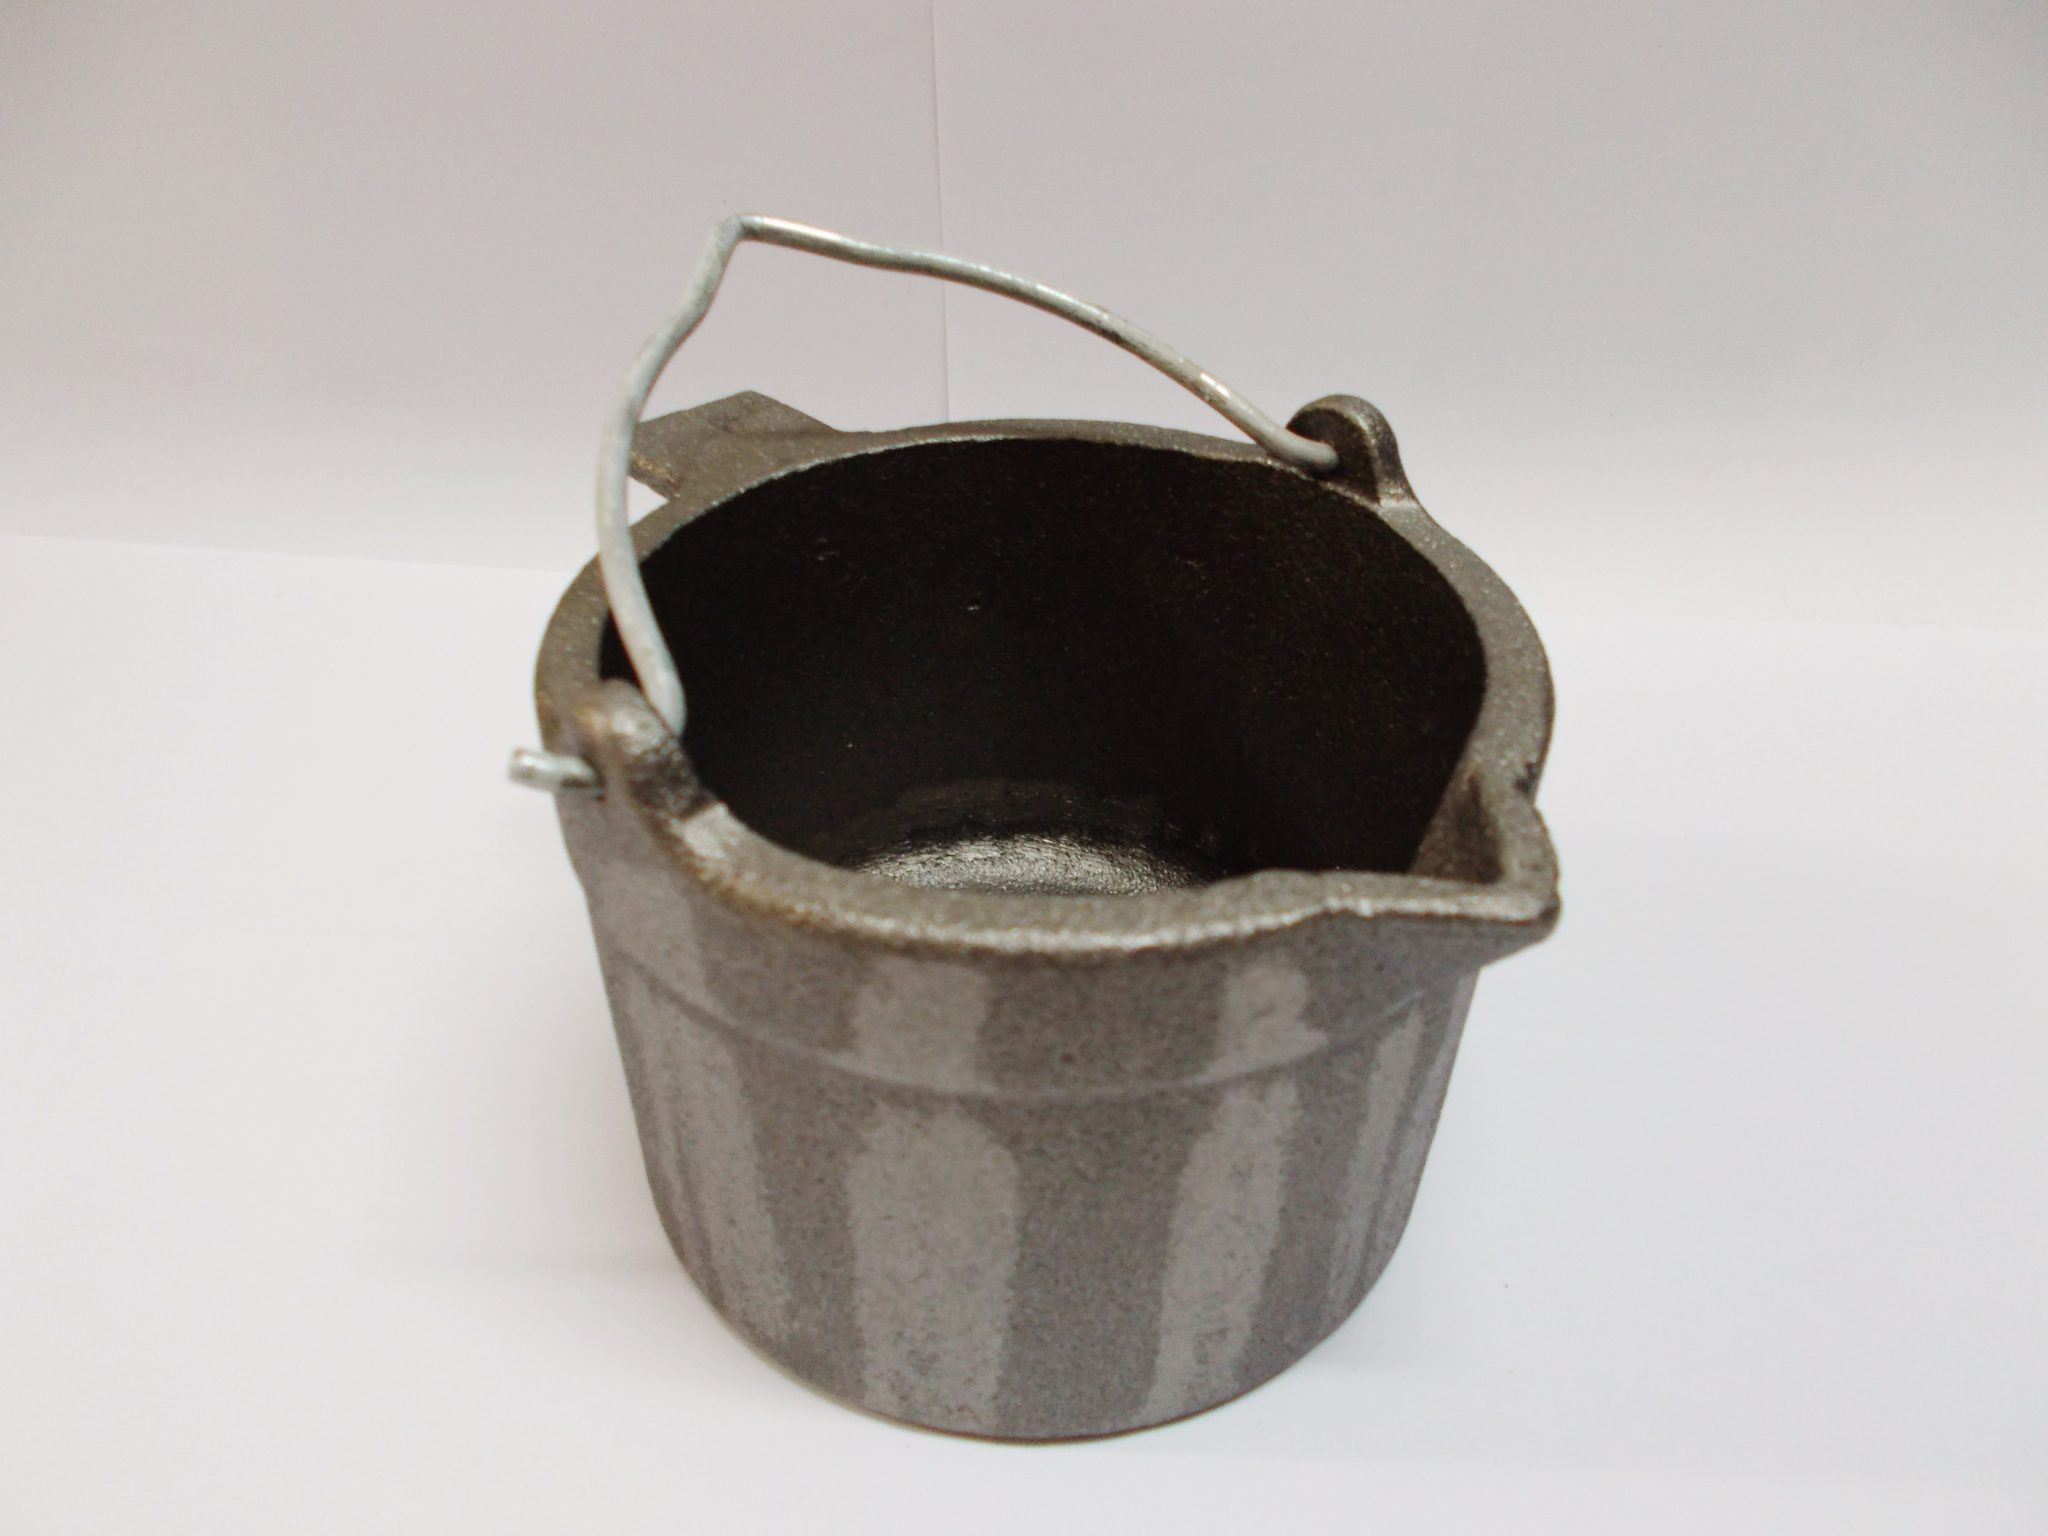 Lyman Cast Iron Lead Pot With Pour Spout 10 P… 2867795 Other - Arnzen Arms